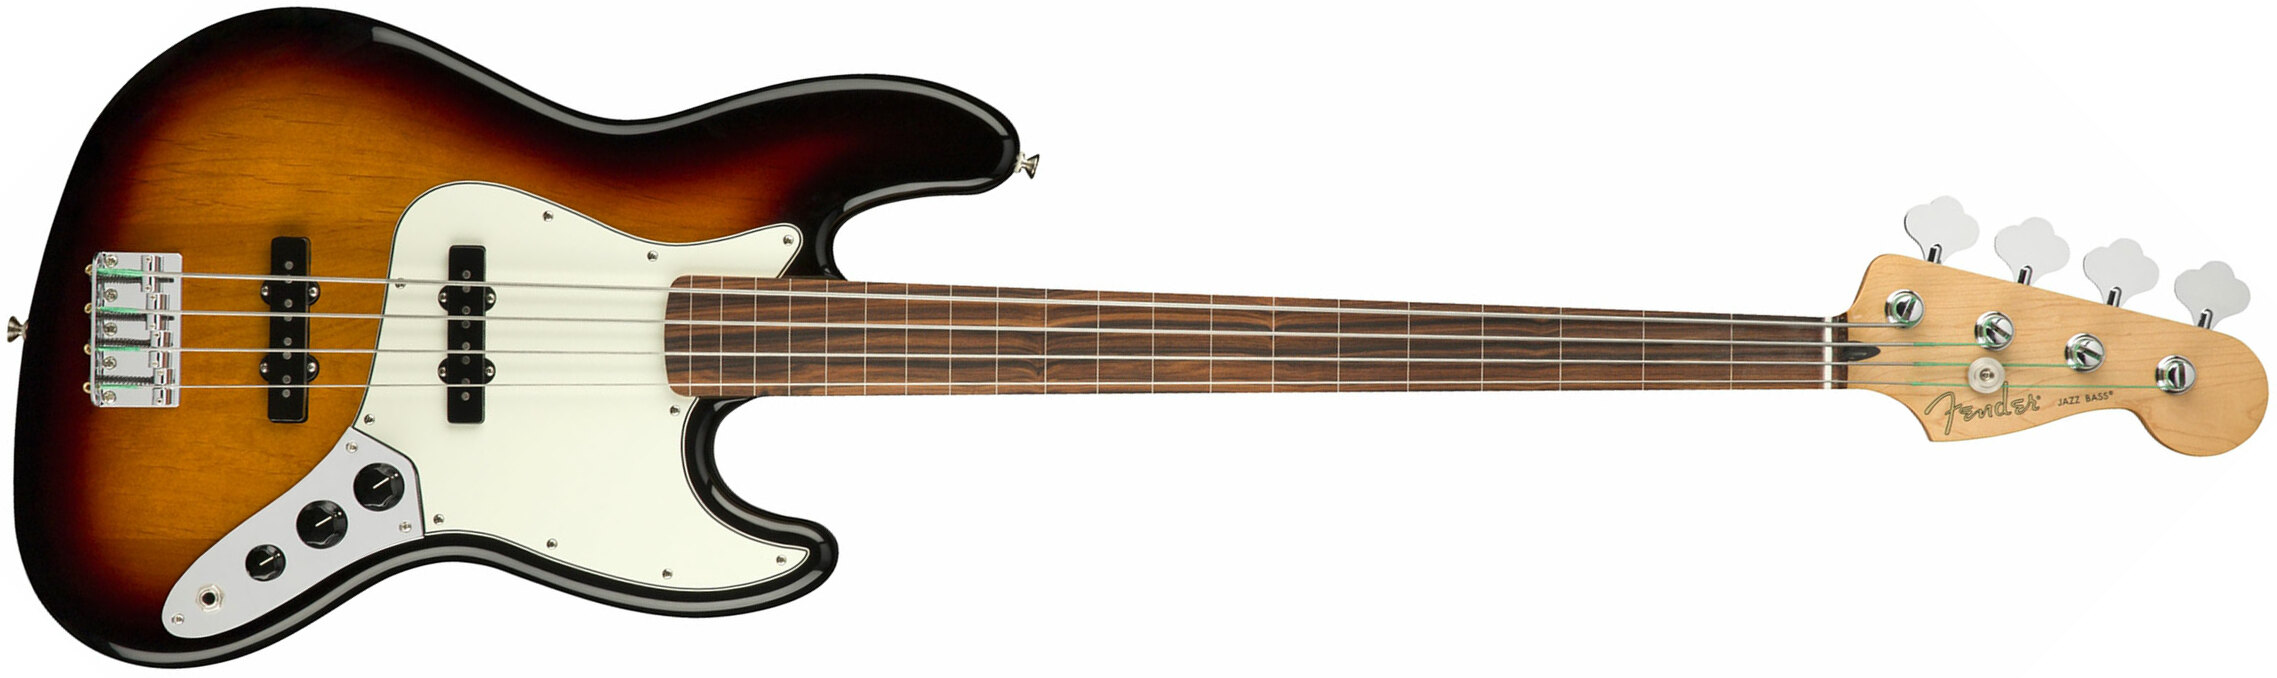 Fender Jazz Bass Player Fretless Mex Pf - 3-color Sunburst - Basse Électrique Solid Body - Main picture